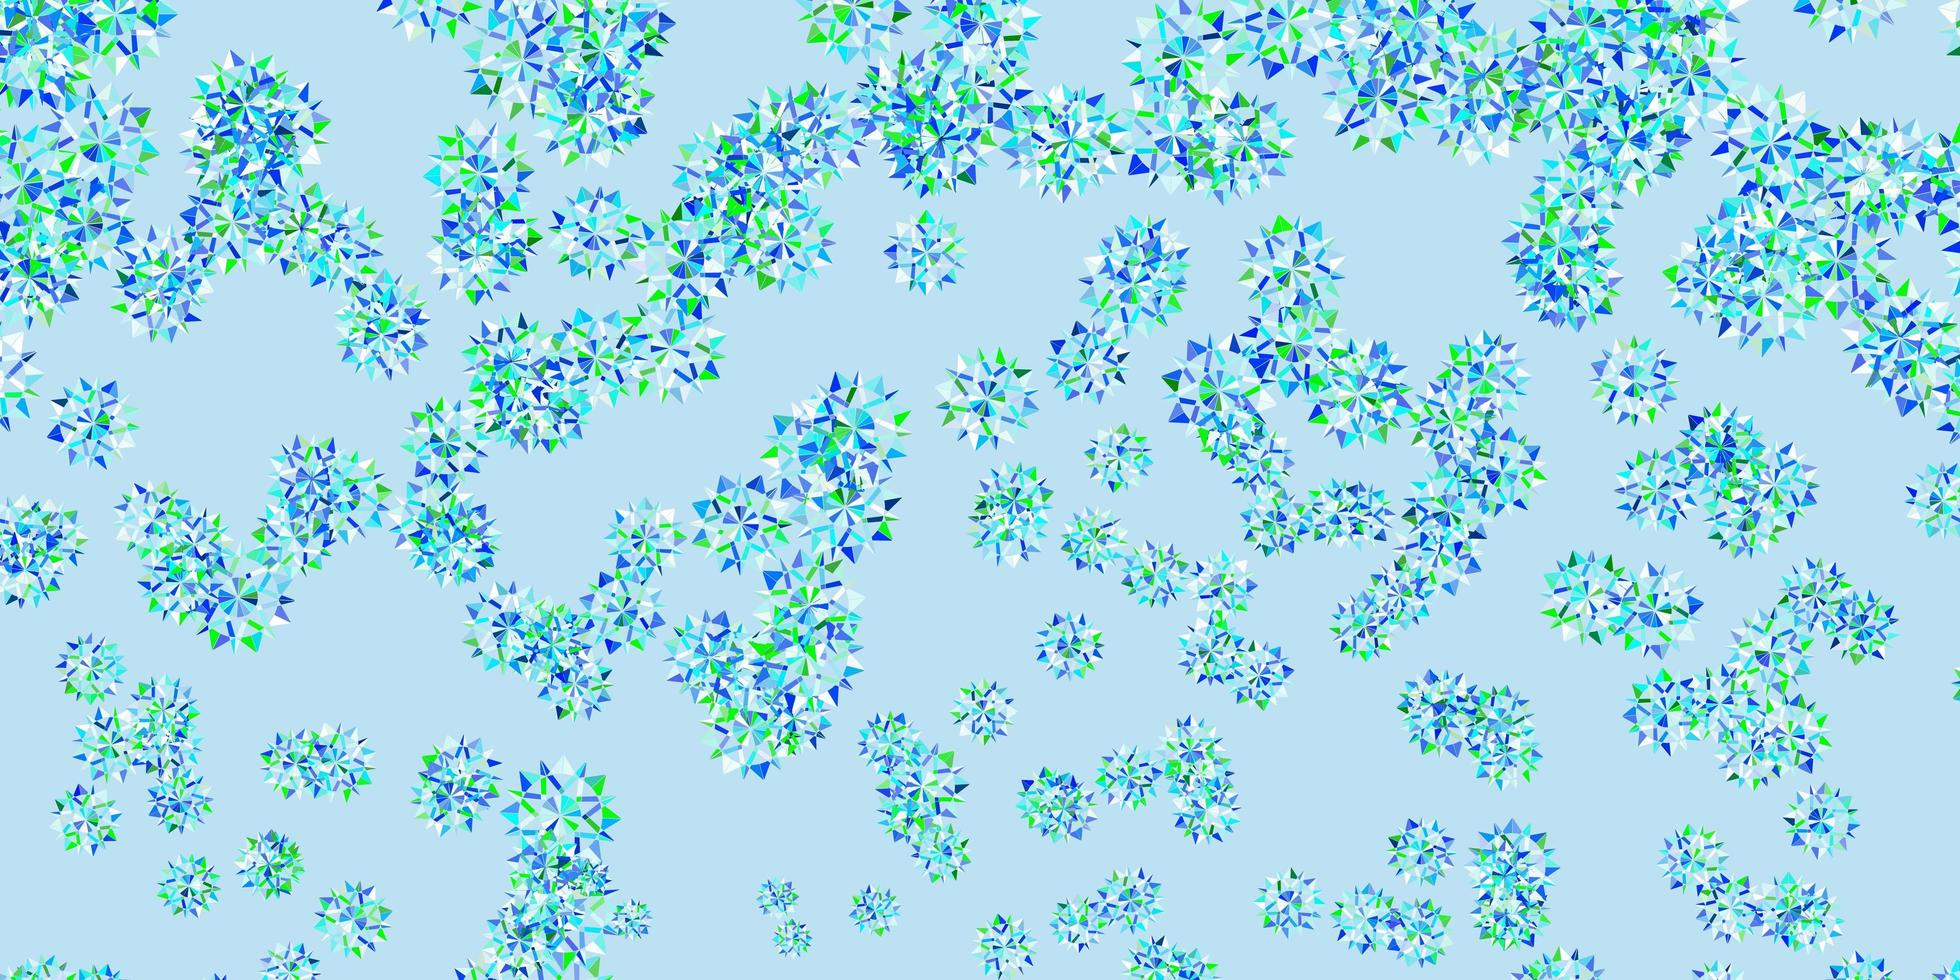 ljusblått, grönt vektormönster med färgade snöflingor. vektor